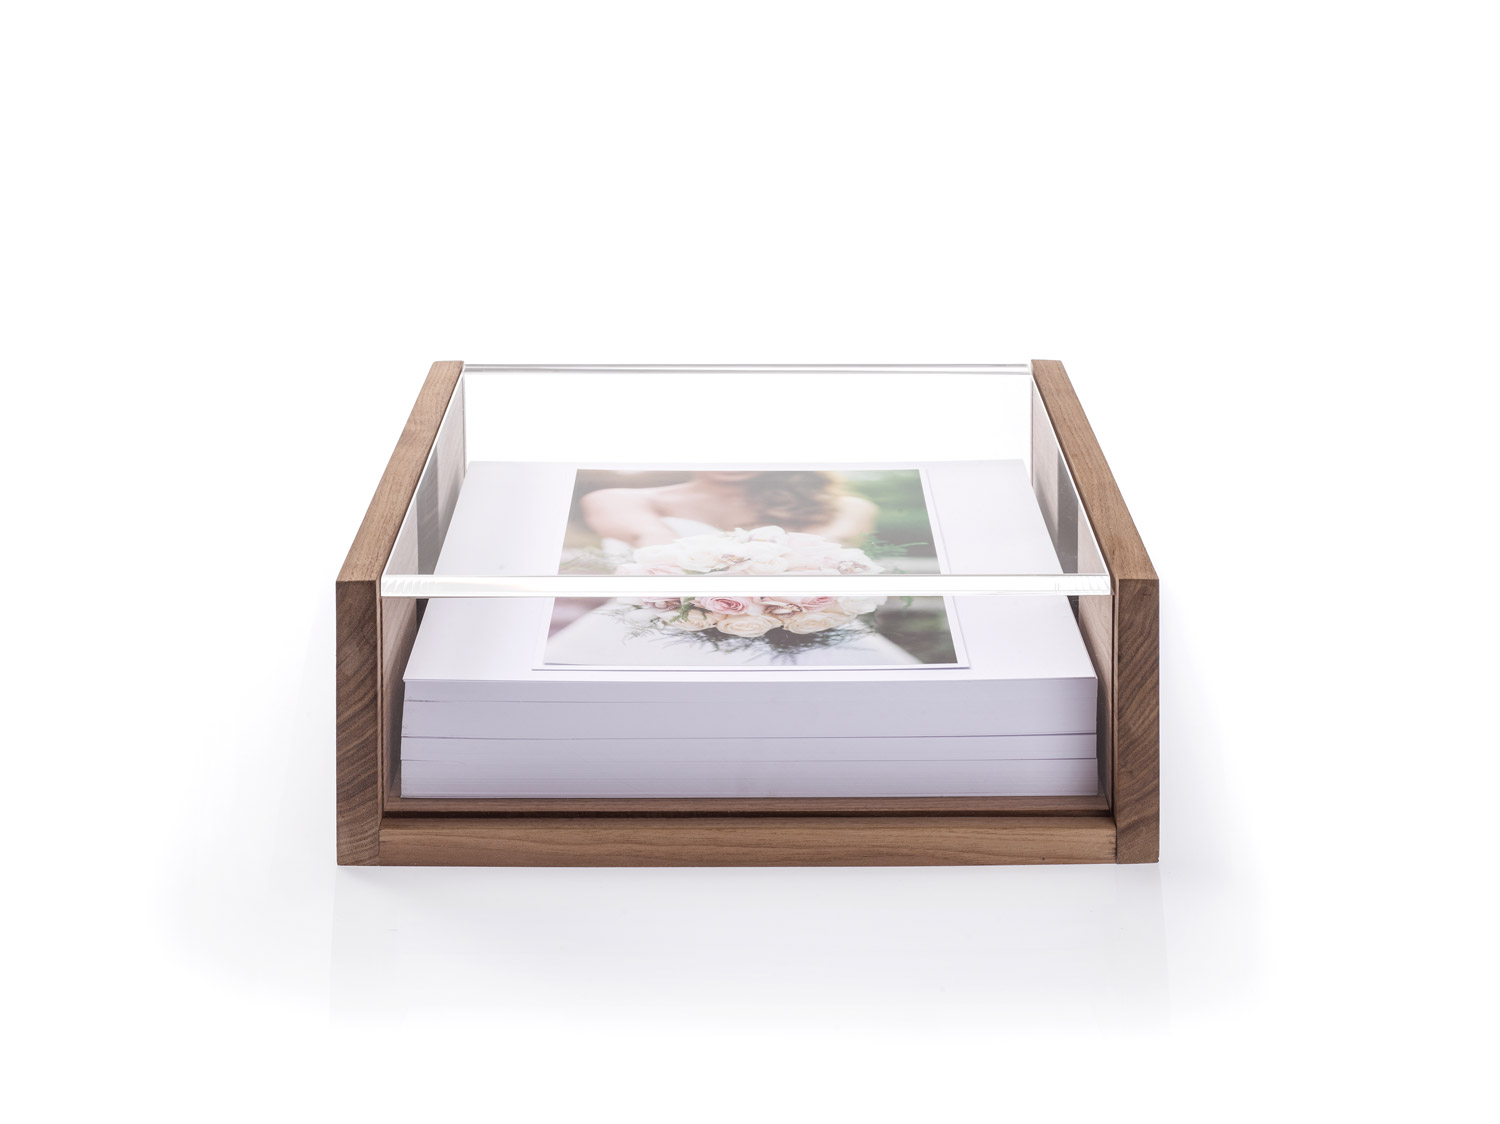 Album fotografico da regalare: set regalo con 75 stampe fotografiche  gratuite. Album fotografico in 10 colori per incollare i momenti più belli  album